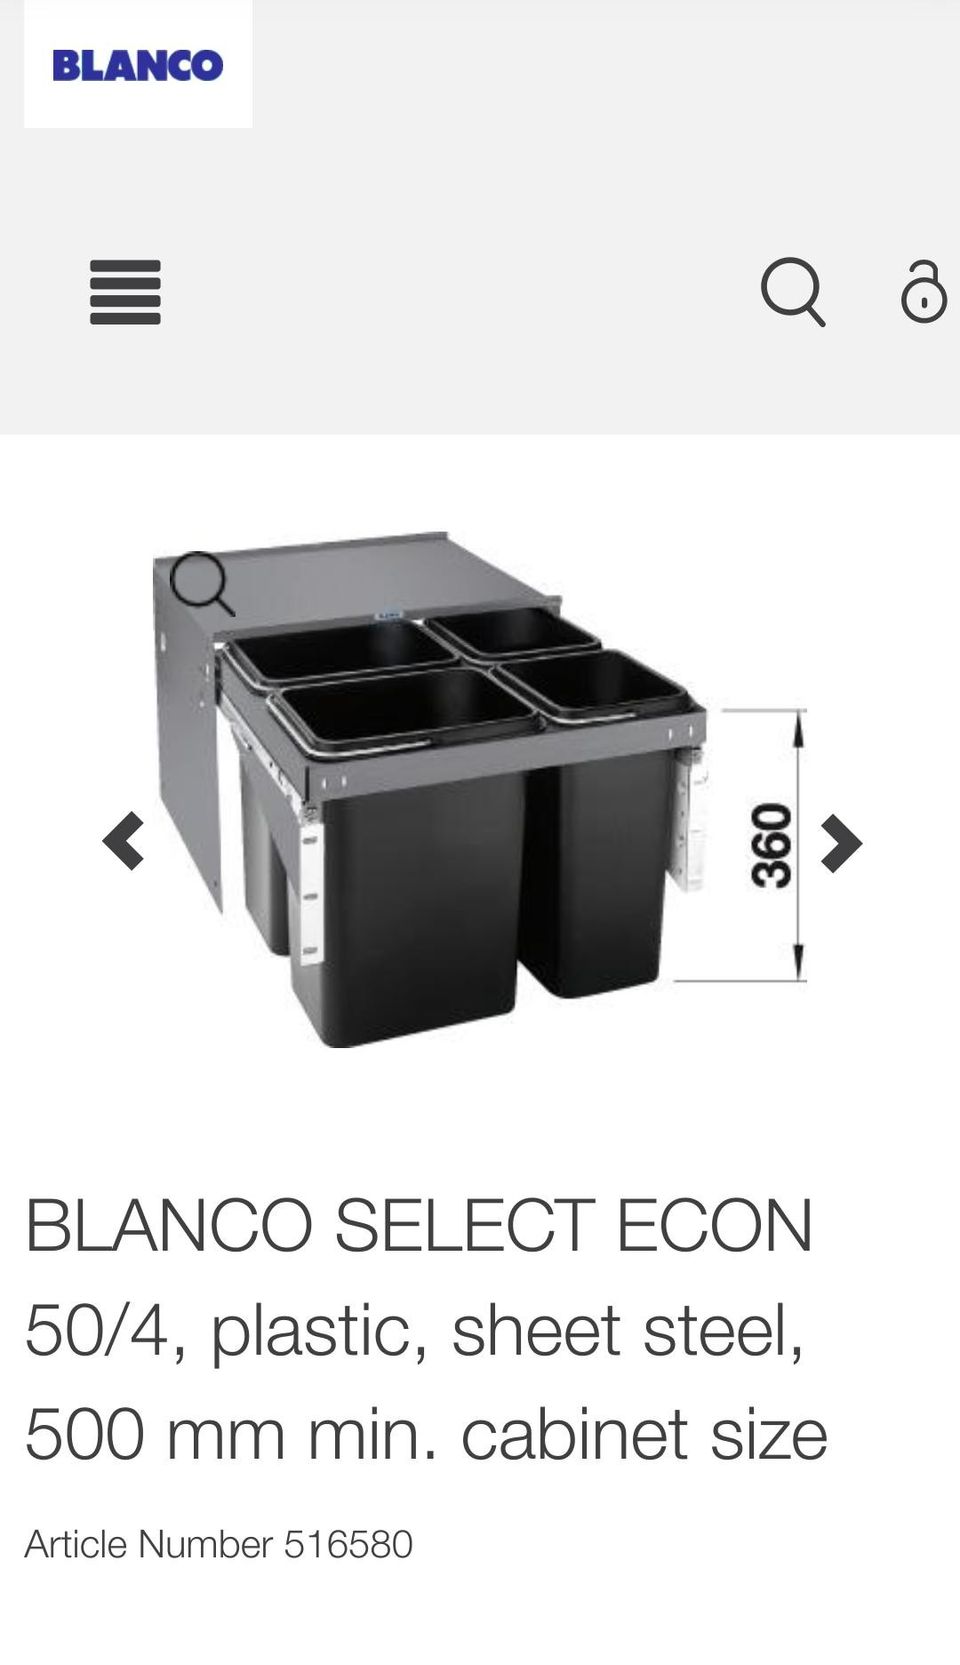 Blanco Select Econ 4/50 jätejärjestelmä 50 cm leveään allaskaappiin 4 astialla